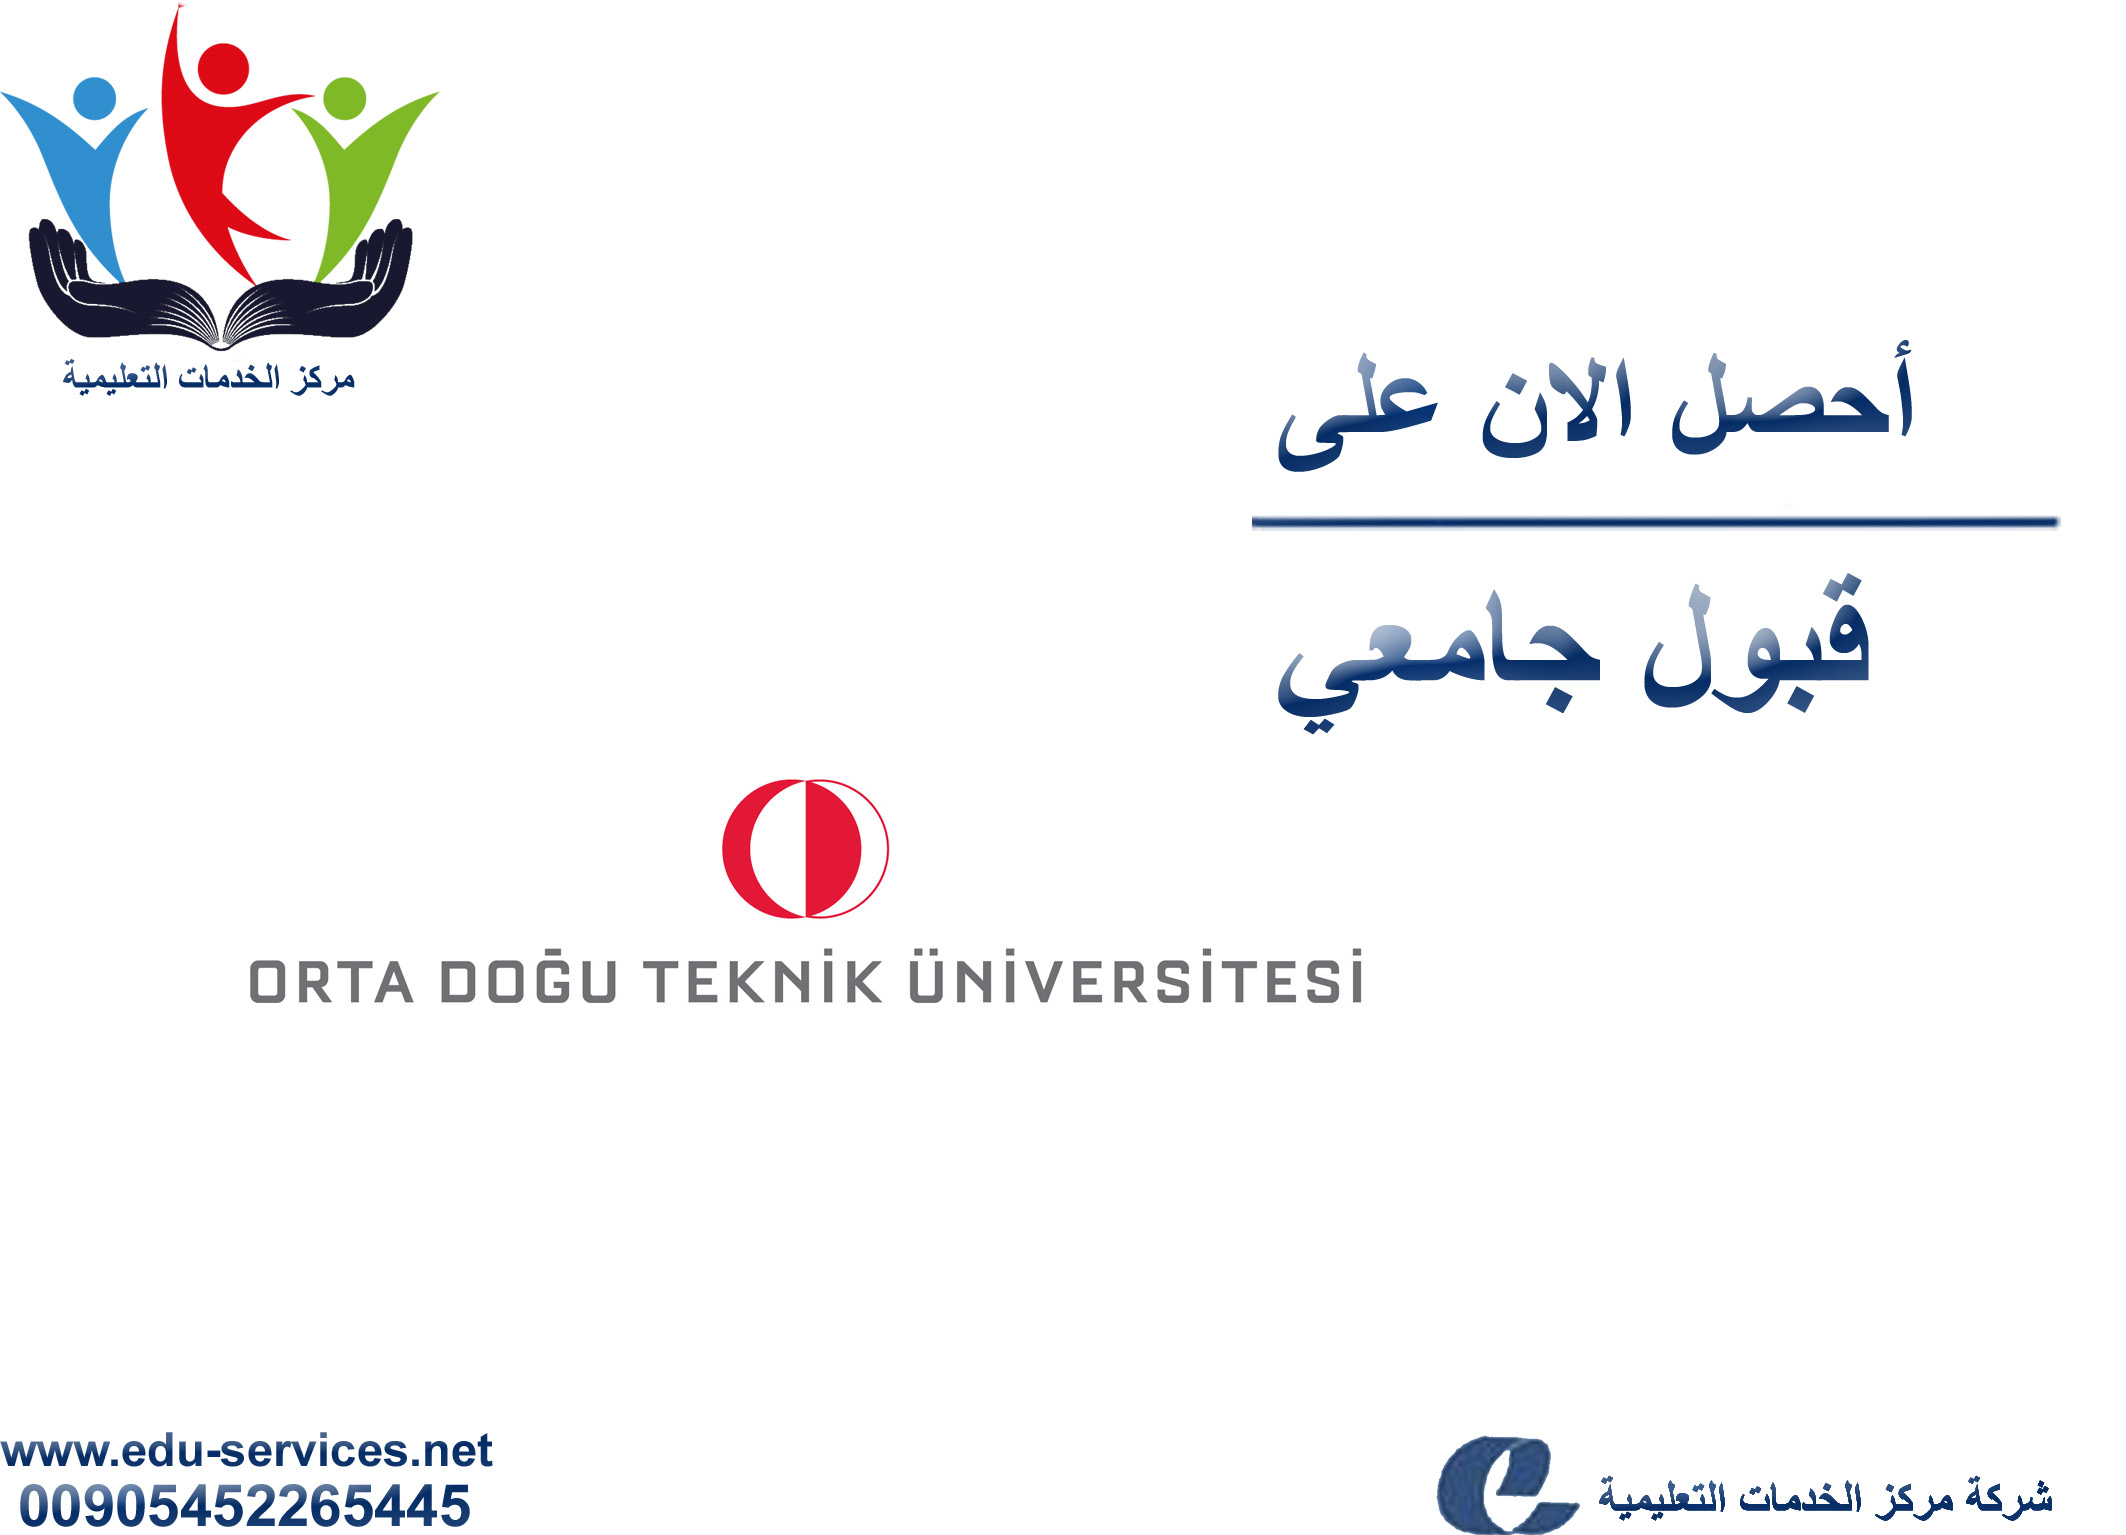 اعلان جامعة الشرق الاوسط التقنية لبرنامج الدراسات العليا للعام 2018